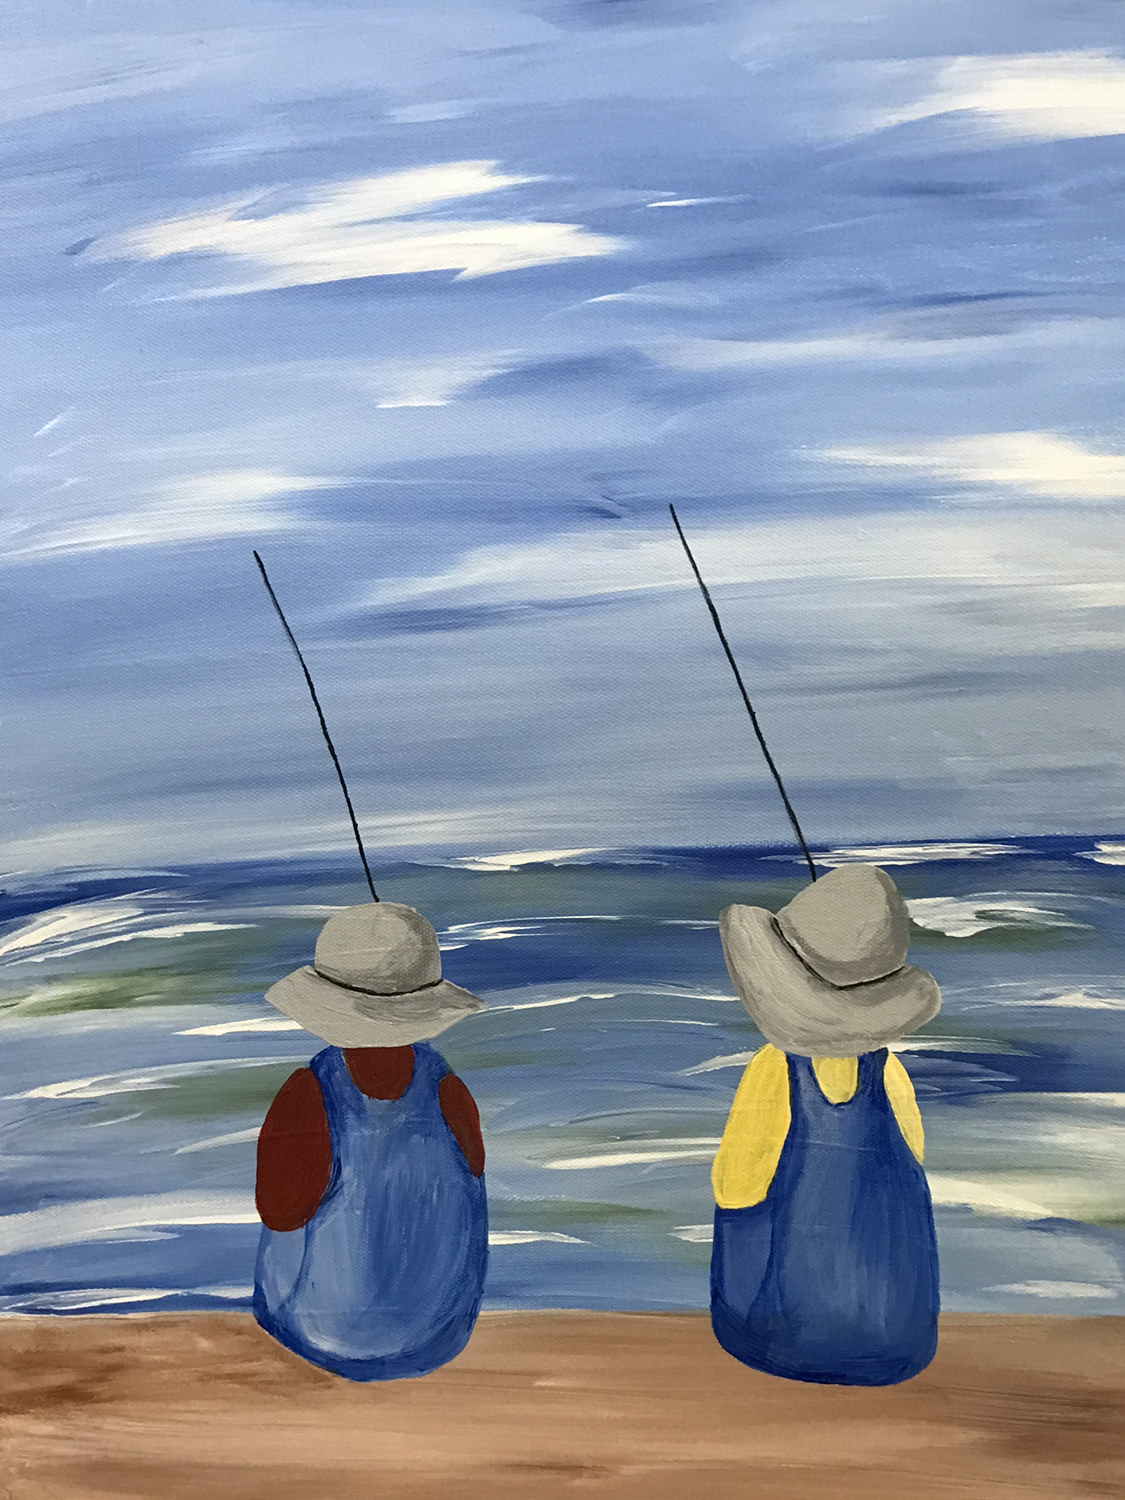 In Studio – Fishermen